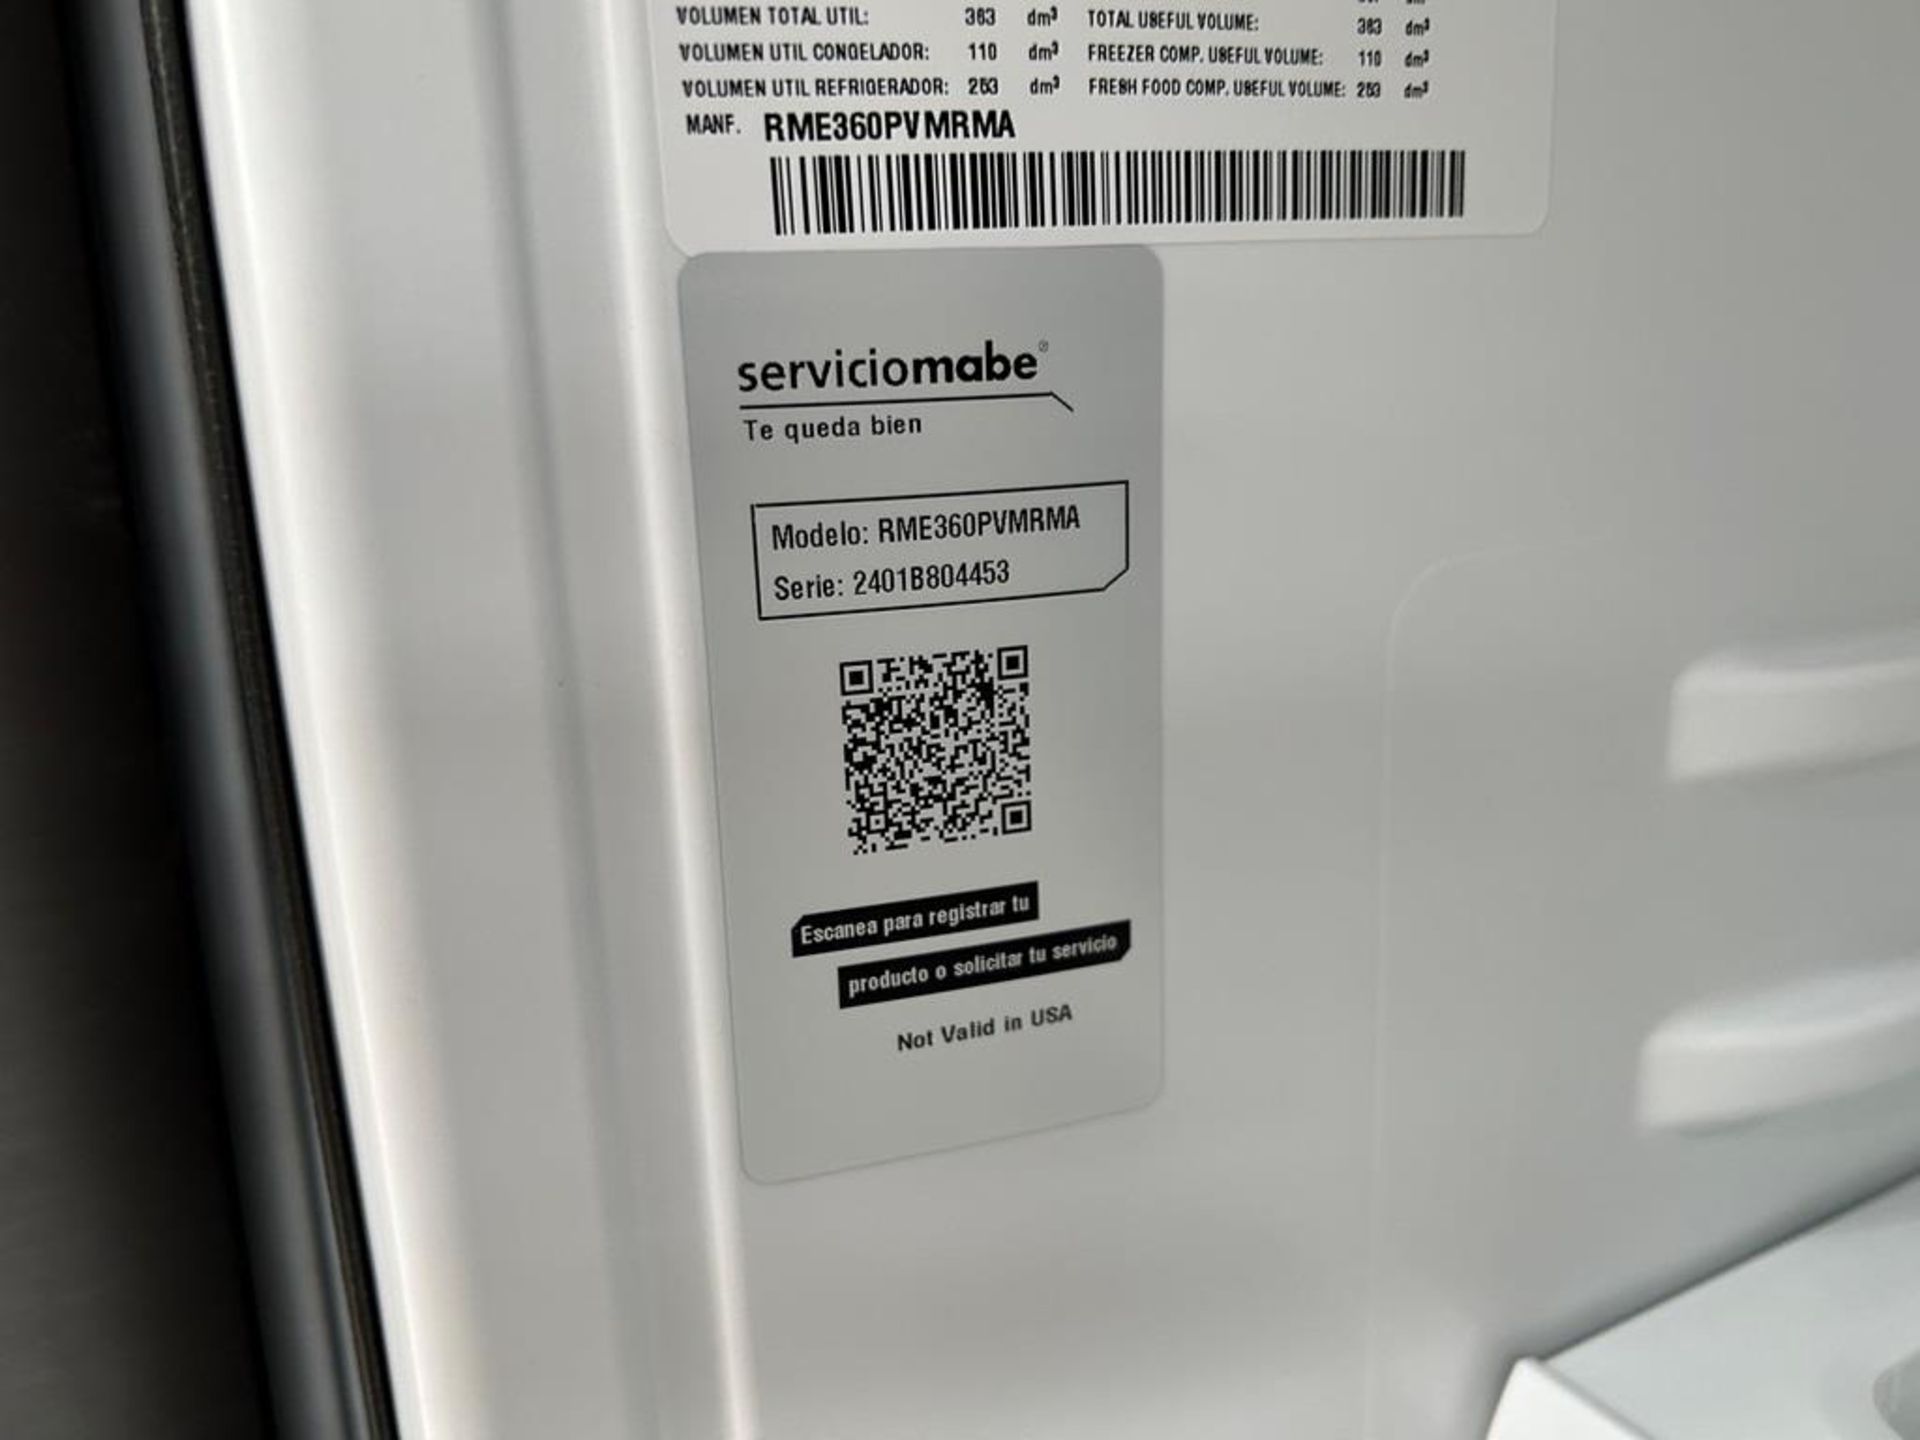 Lote de 2 refrigeradores contiene: 1 Refrigerador Marca MABE, Modelo RME360PVMRM0, Serie 04453, Col - Image 14 of 16